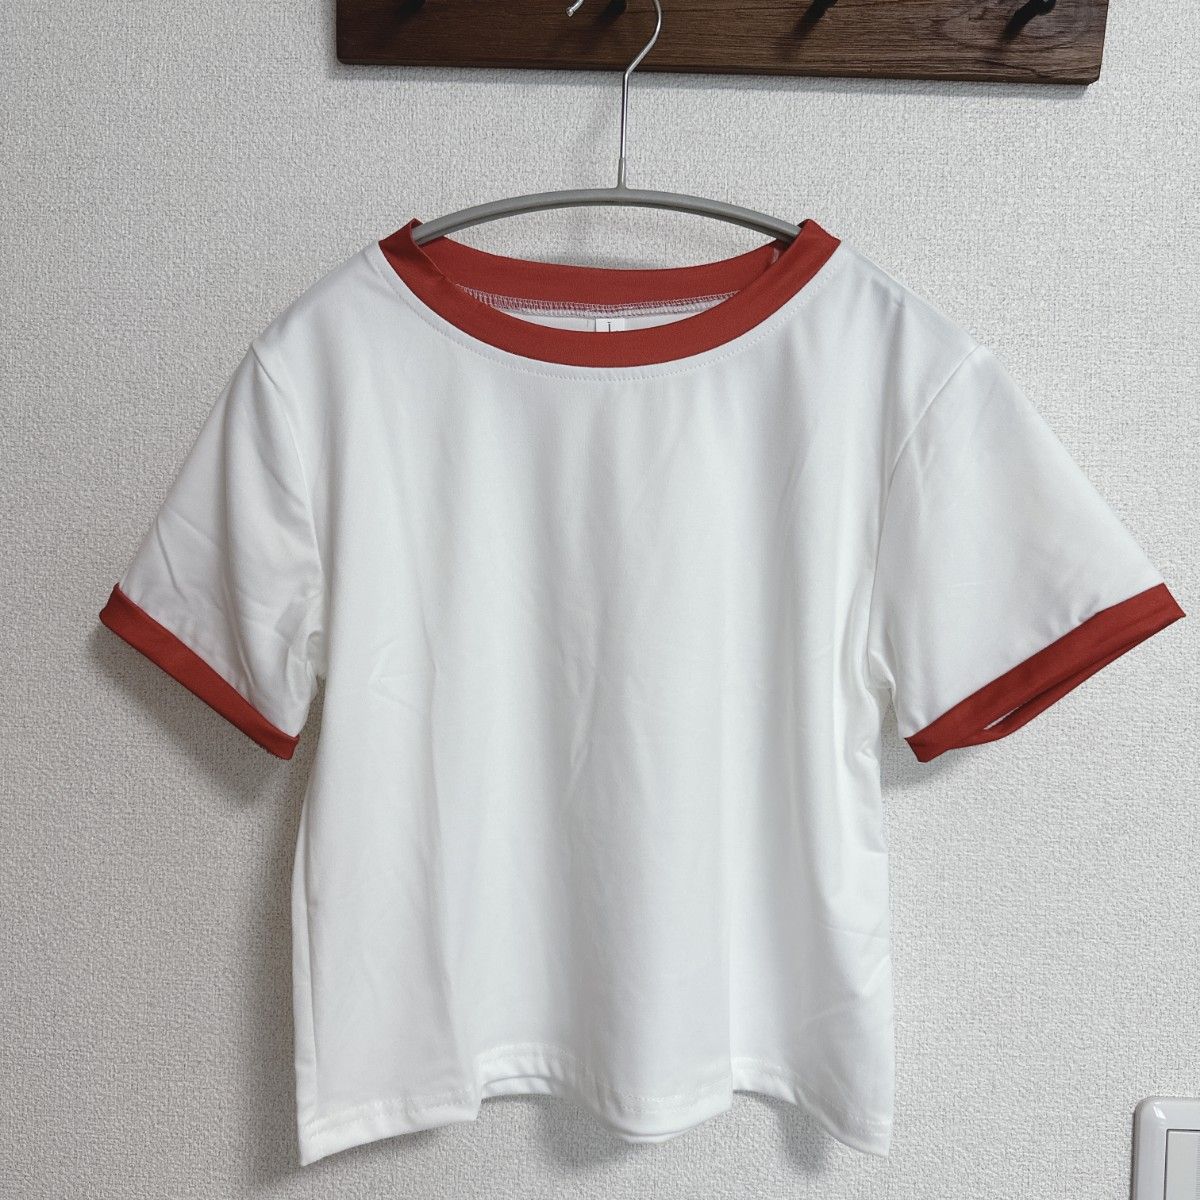 カットソー 半袖 スタンドカラー シンプル クロップド丈 Tシャツ ホワイト 可愛い 無地 ワンポイント 夏 サマーTシャツ 韓国